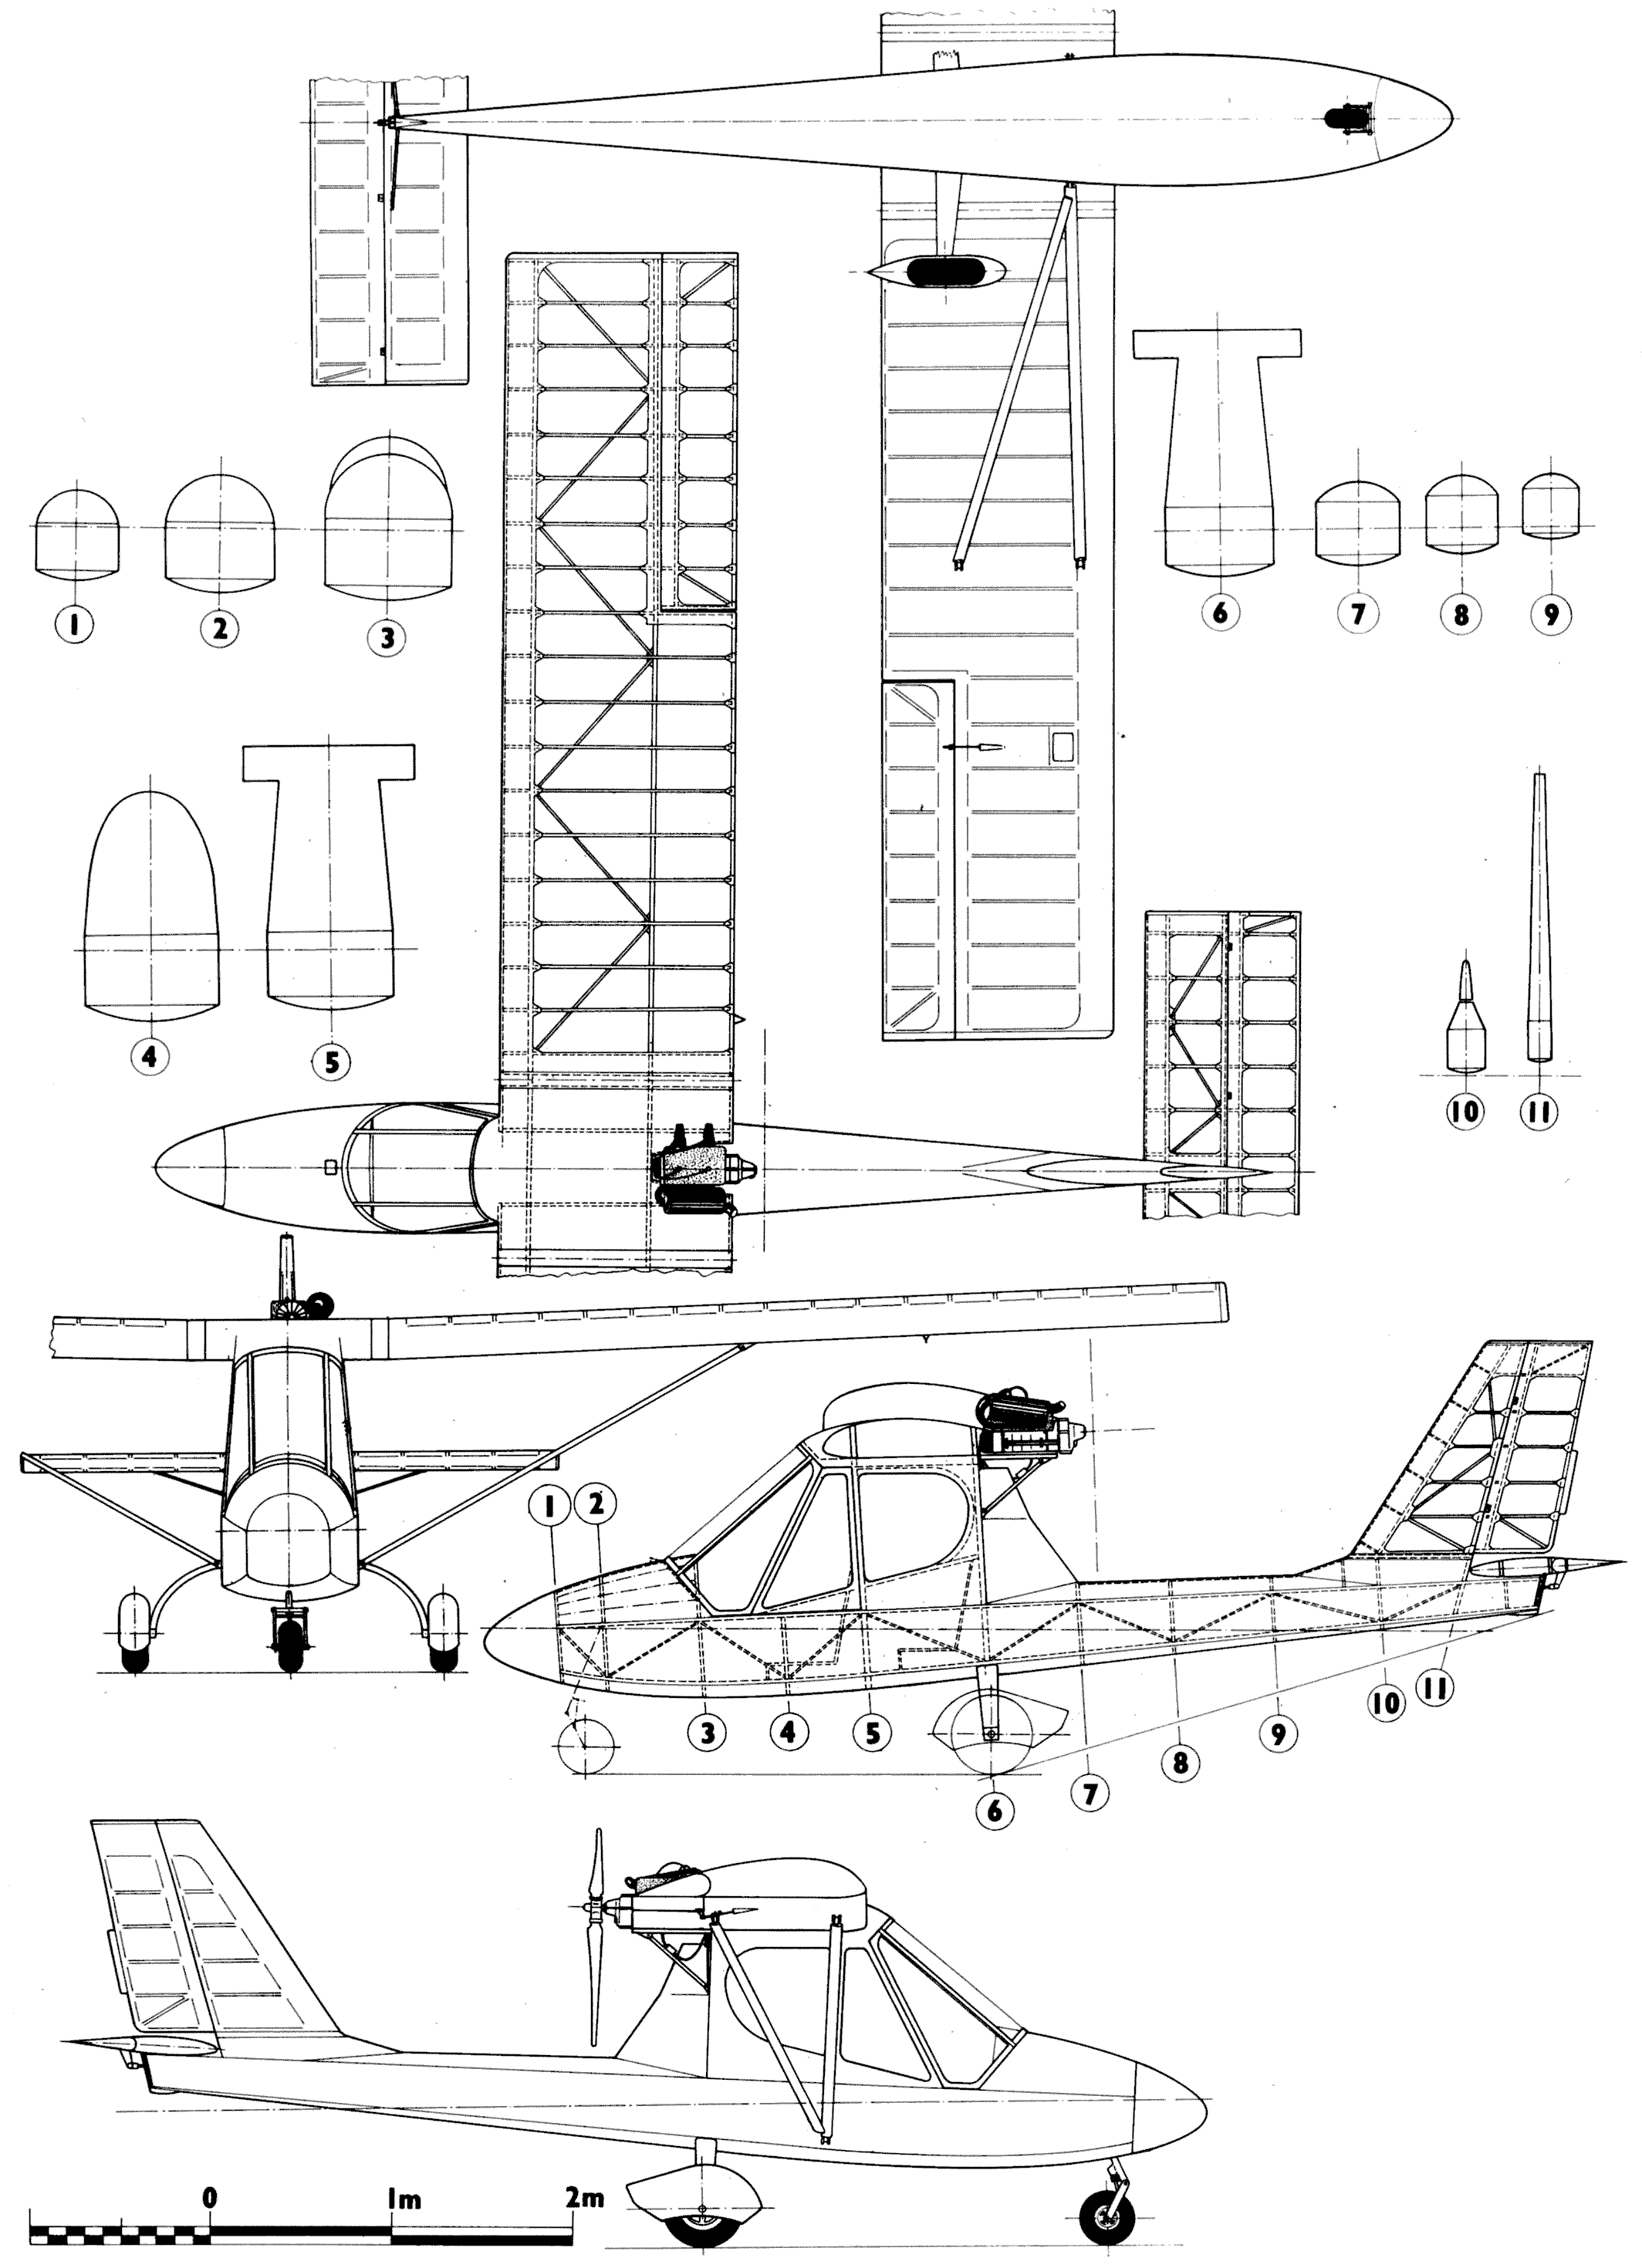 Kossak k91 blueprint